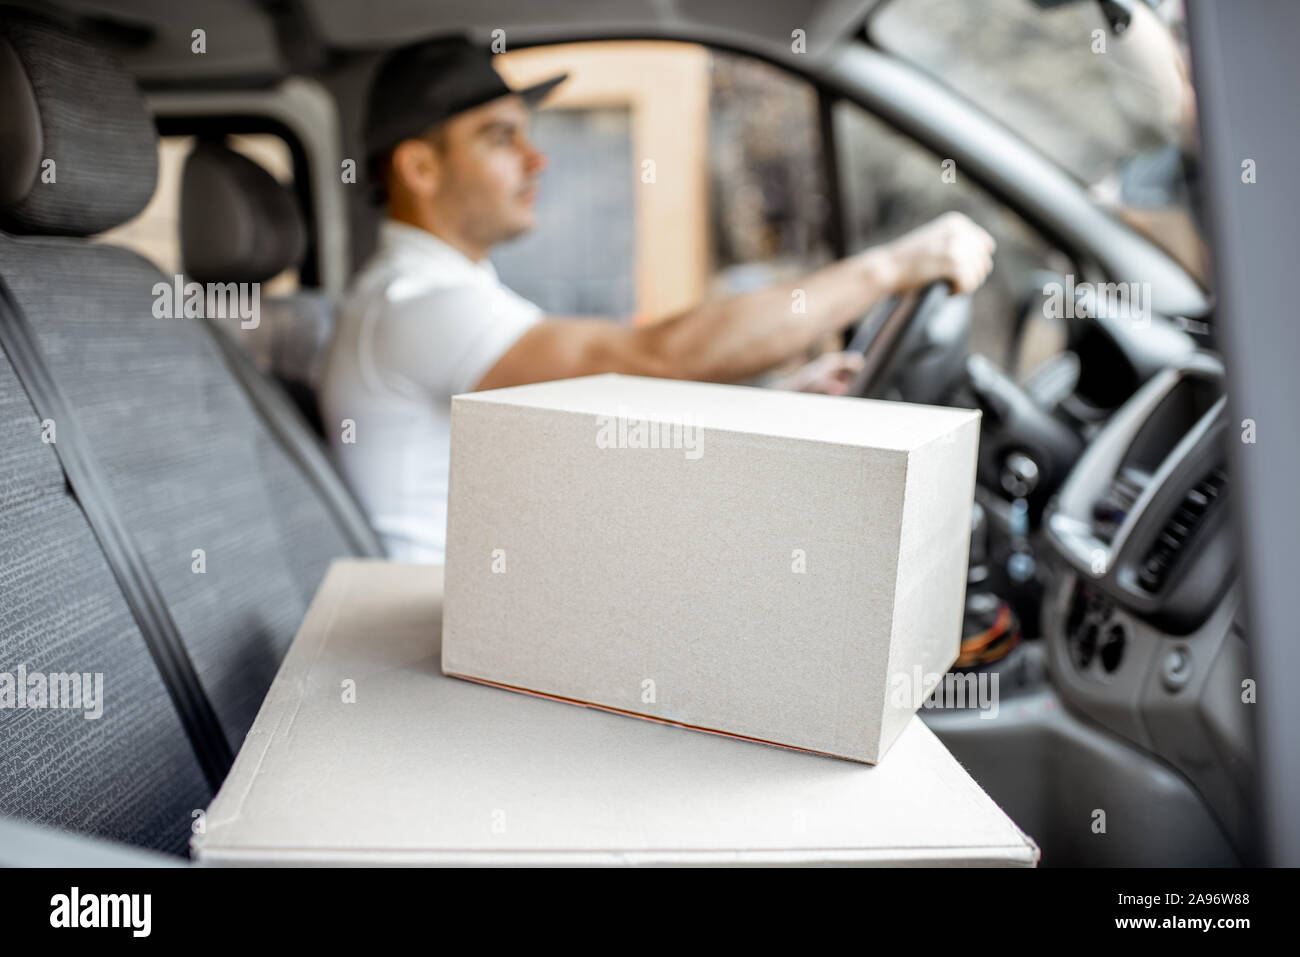 Consegna uomo alla guida di veicolo carico con pacchi sul sedile del passeggero, immagine focalizzata sulle scatole di cartone con uno spazio vuoto Foto Stock